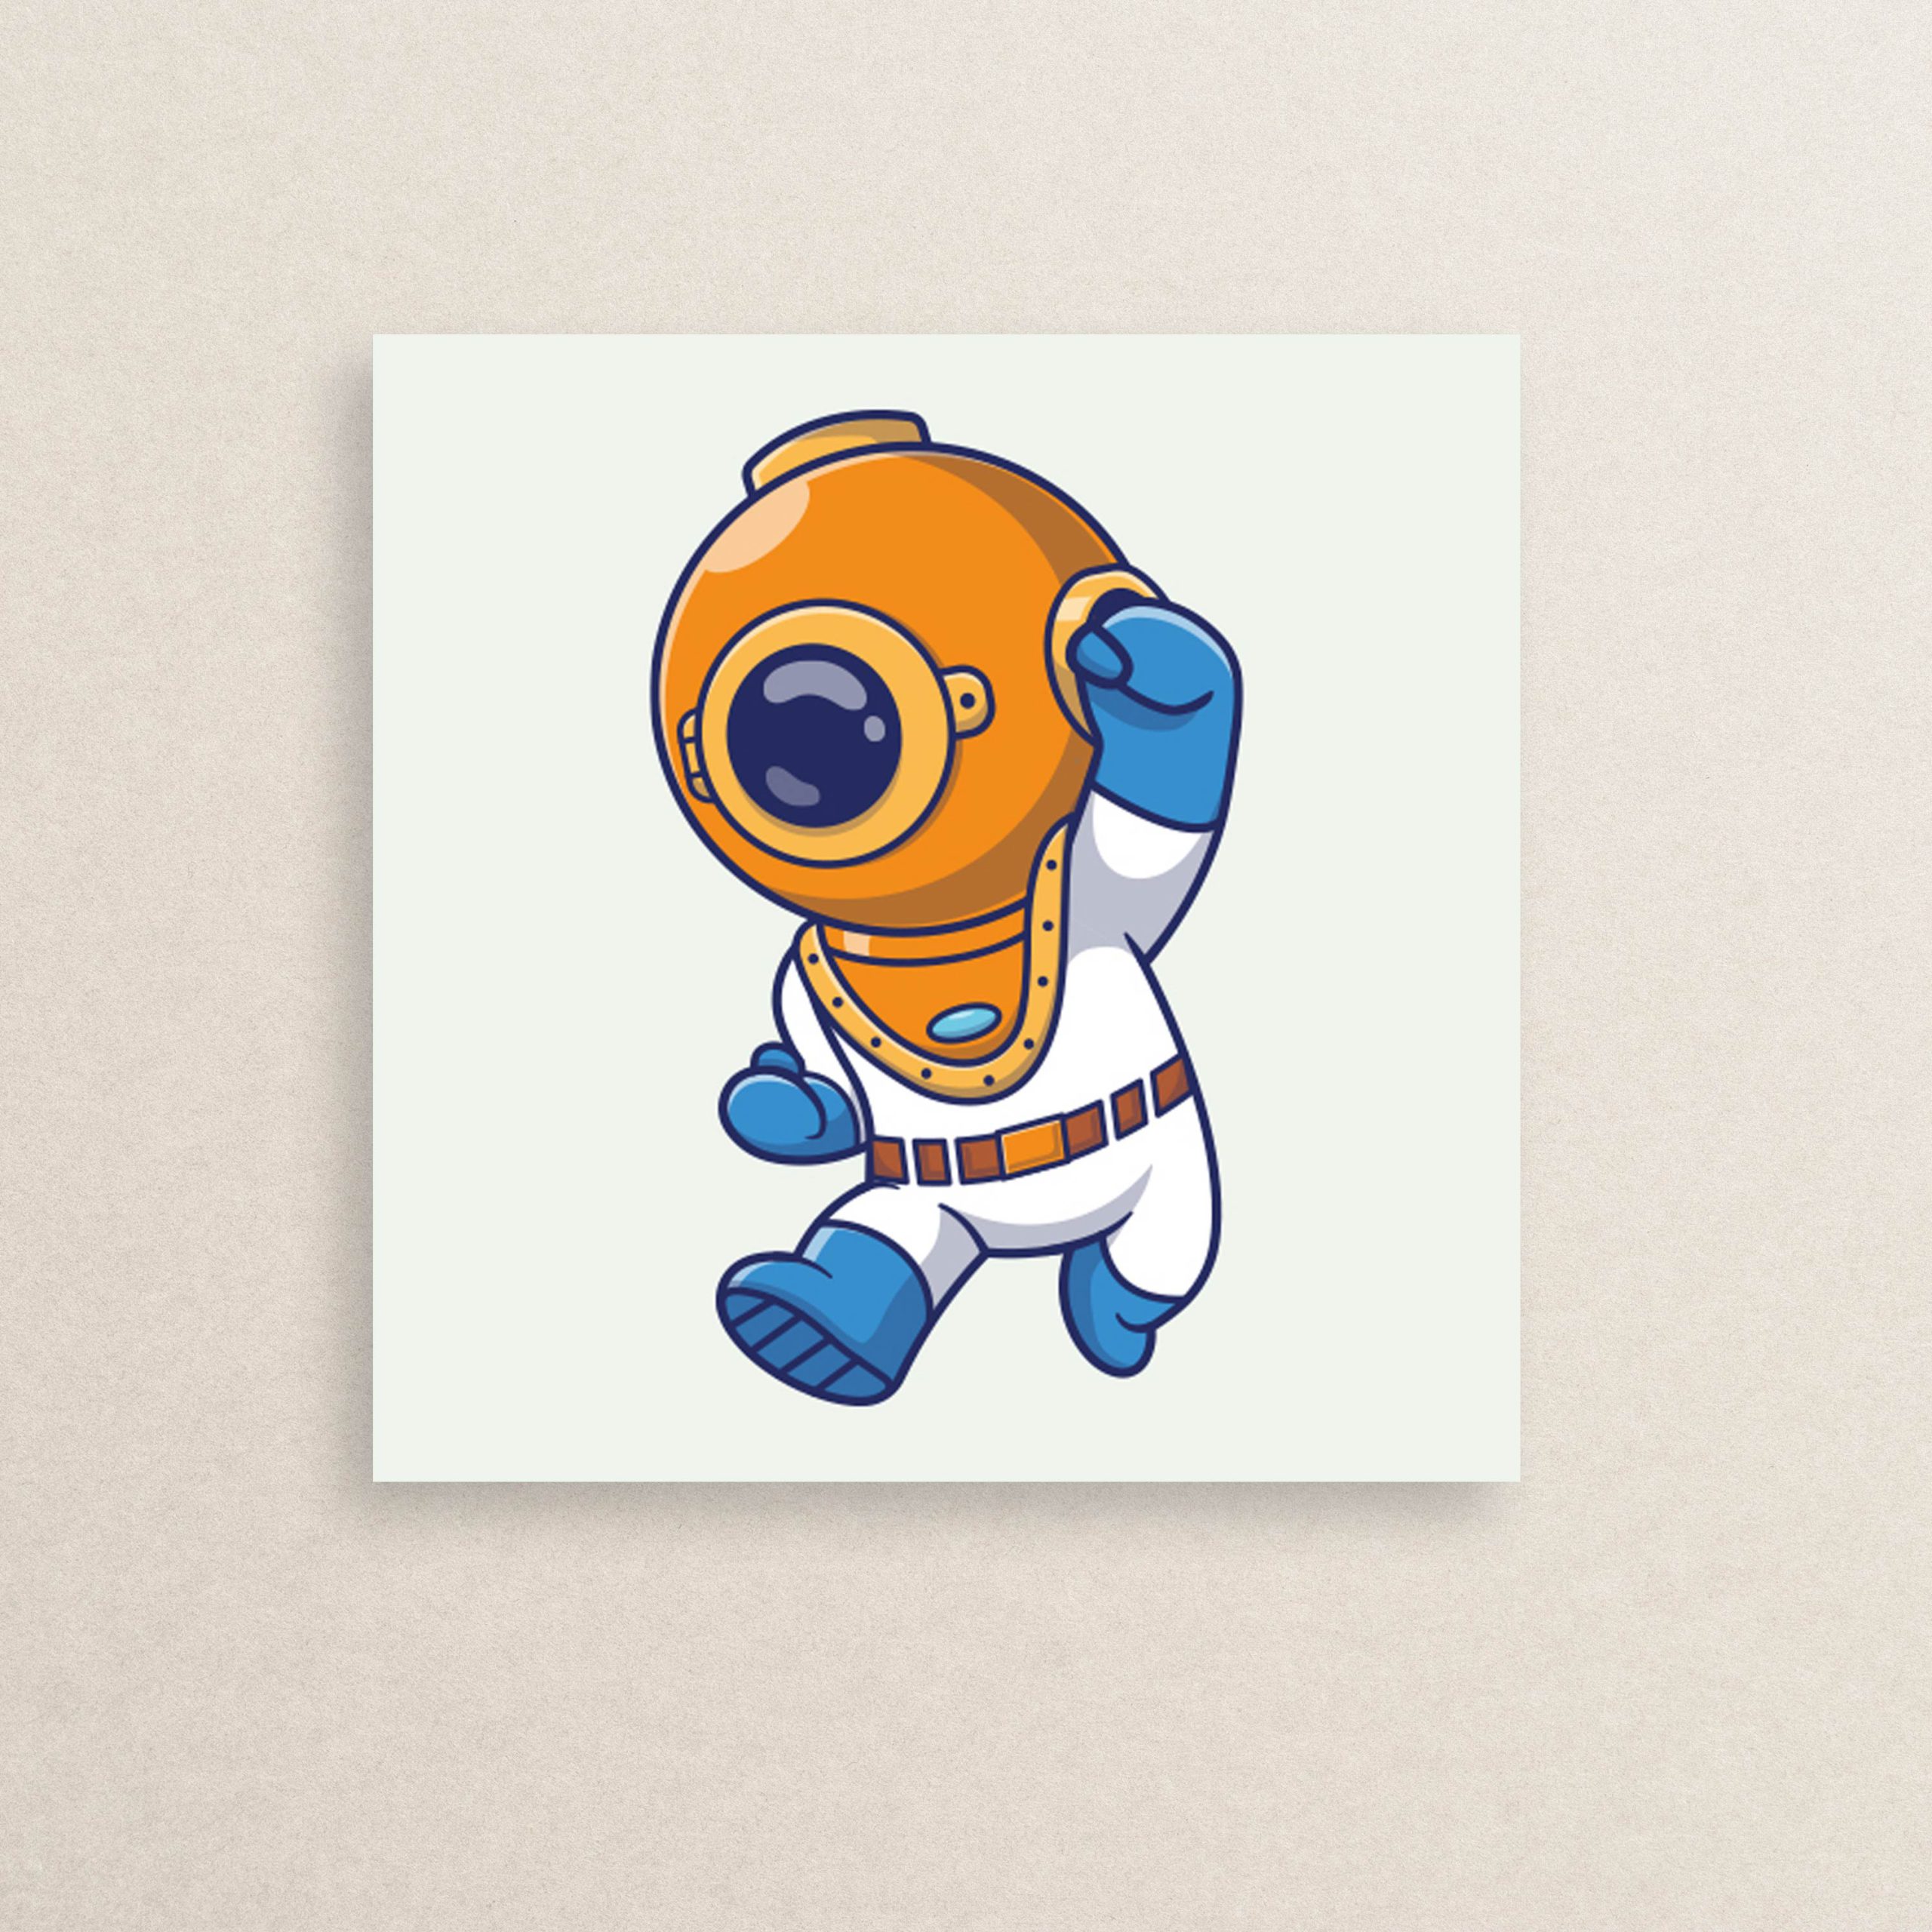 استیکر فضانورد غواص 02 | Astronaut diver sticker 02